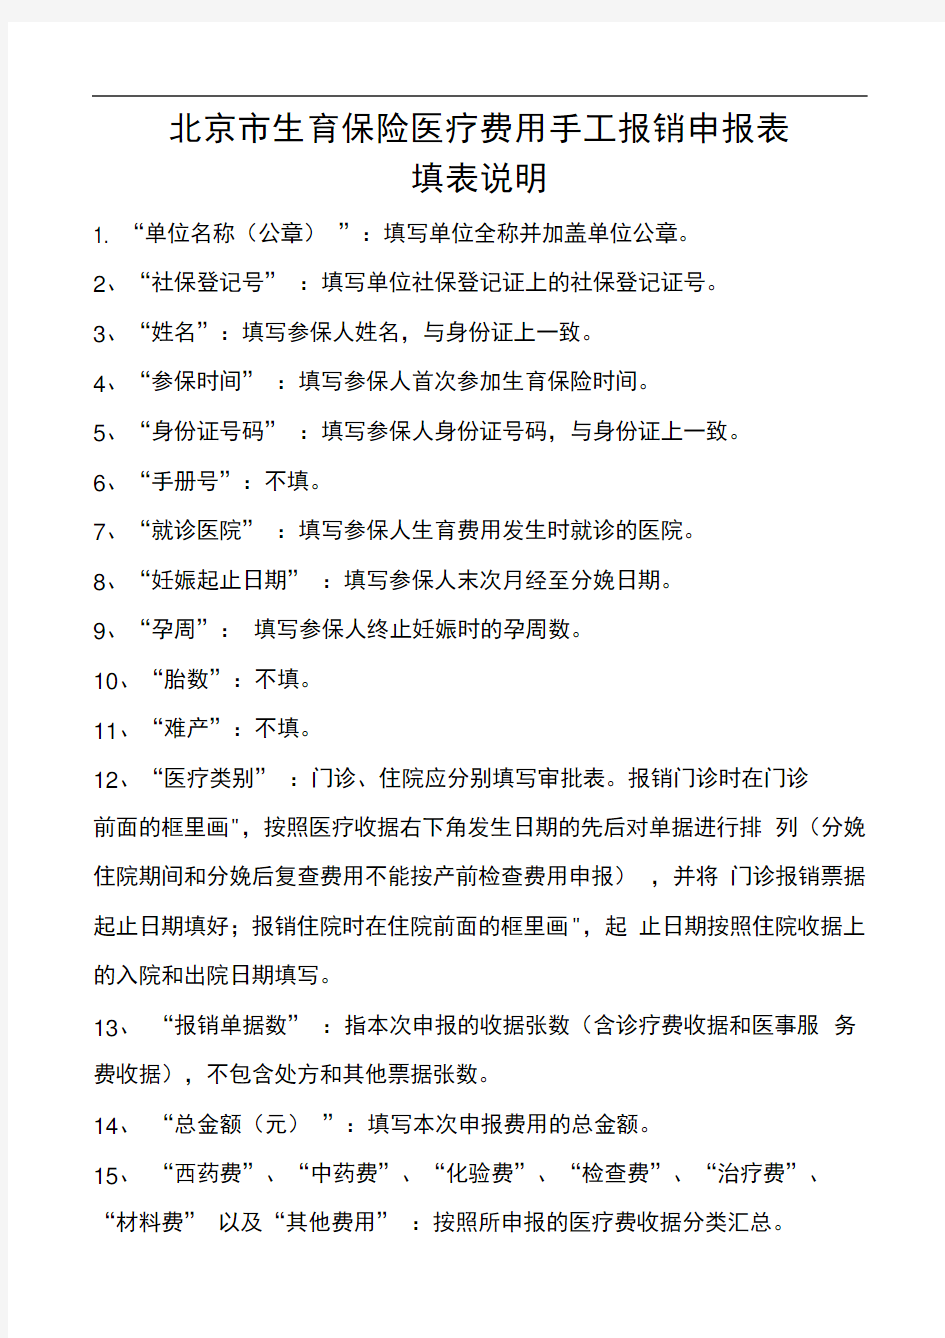 北京市生育保险医疗费用手工报销申报表填表说明(20201015234334)